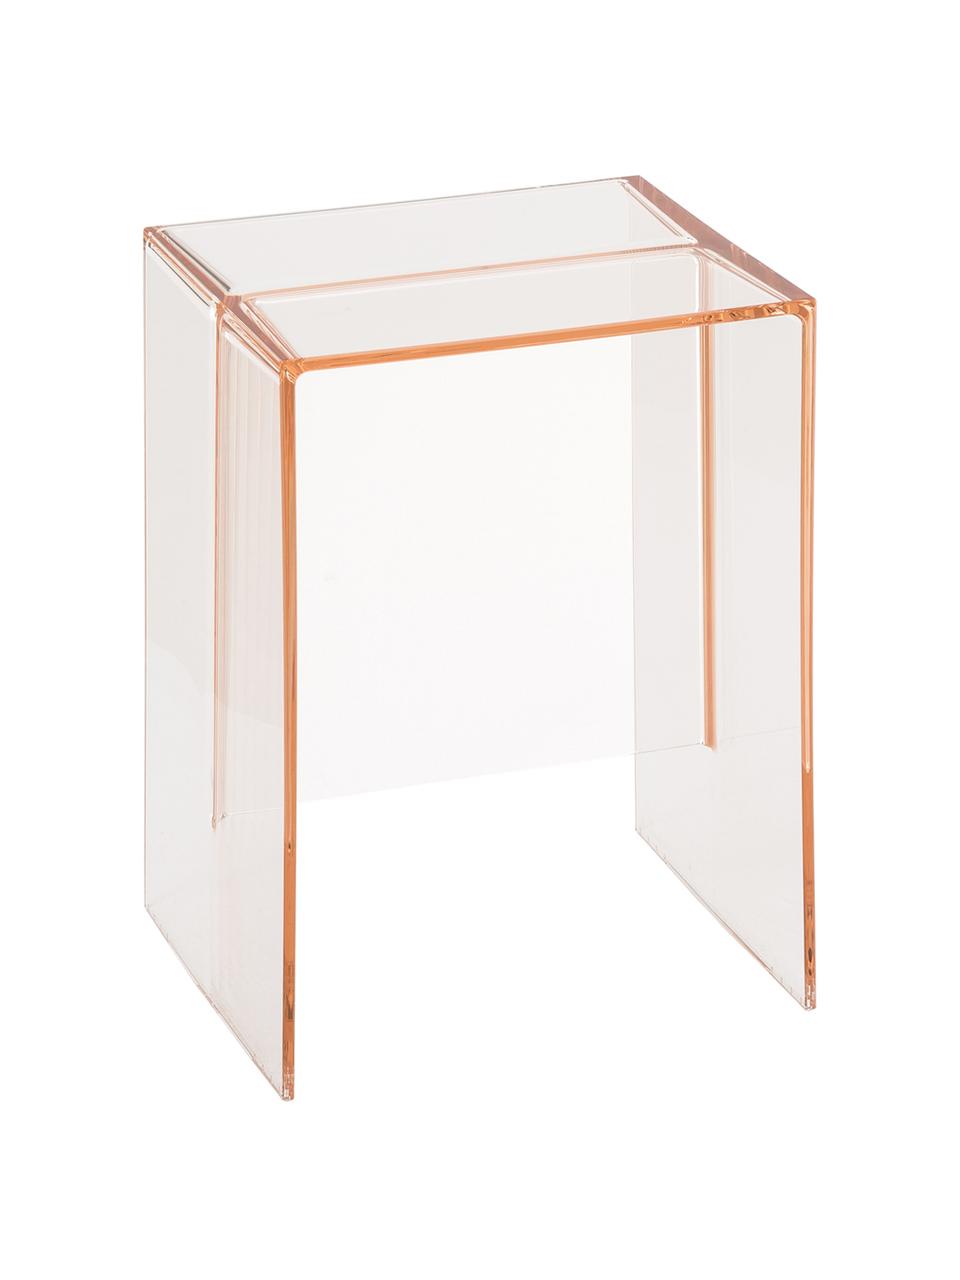 Tabouret/table d'appoint rose transparent Max-Beam, Polypropylène coloré et transparent, Rose, transparent, larg. 33 x haut. 47 cm